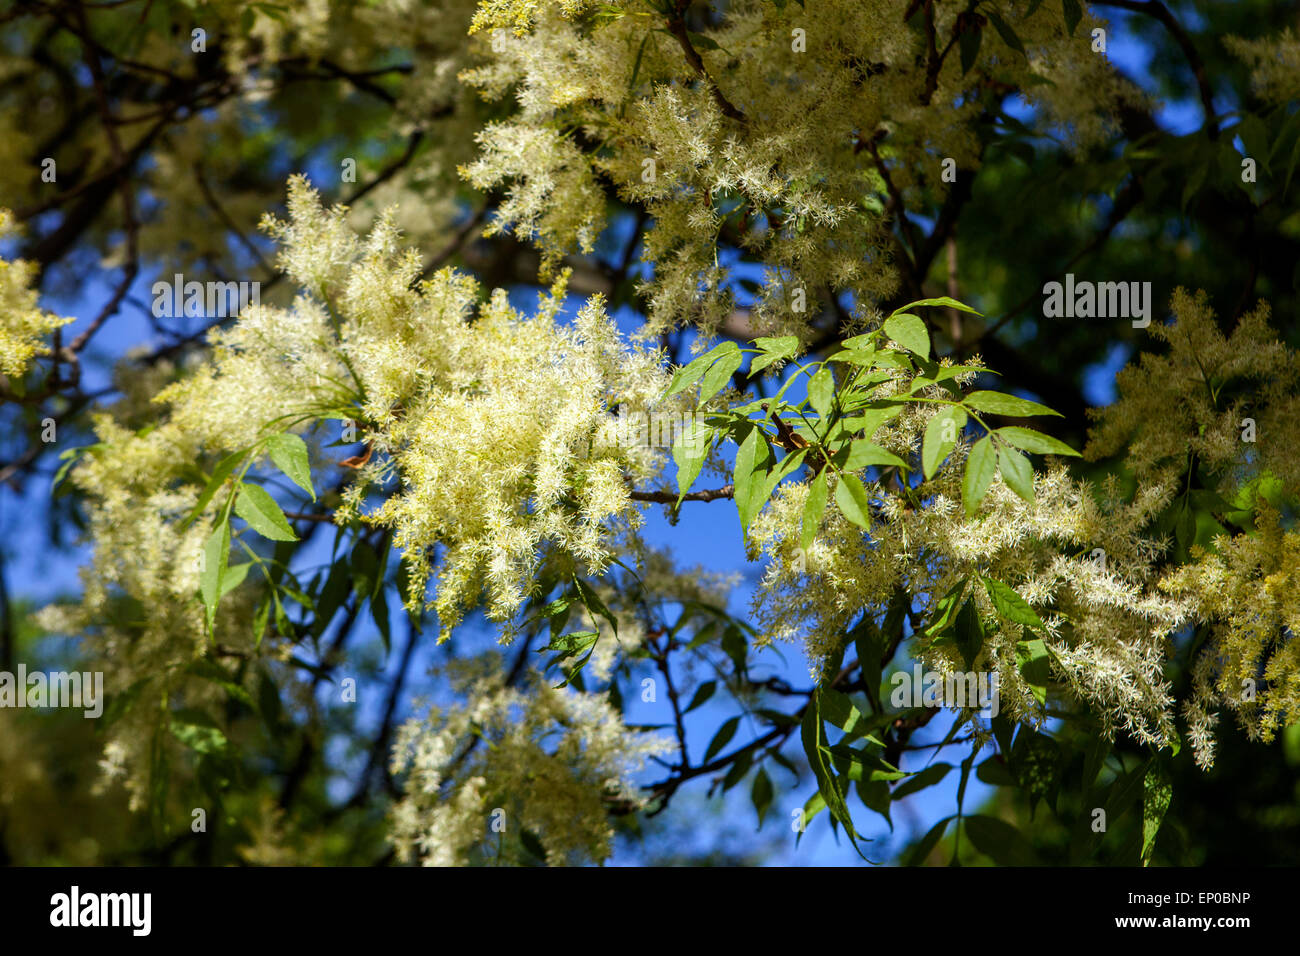 Manna Ash tree Fraxinus ornus flowers and leaves Stock Photo